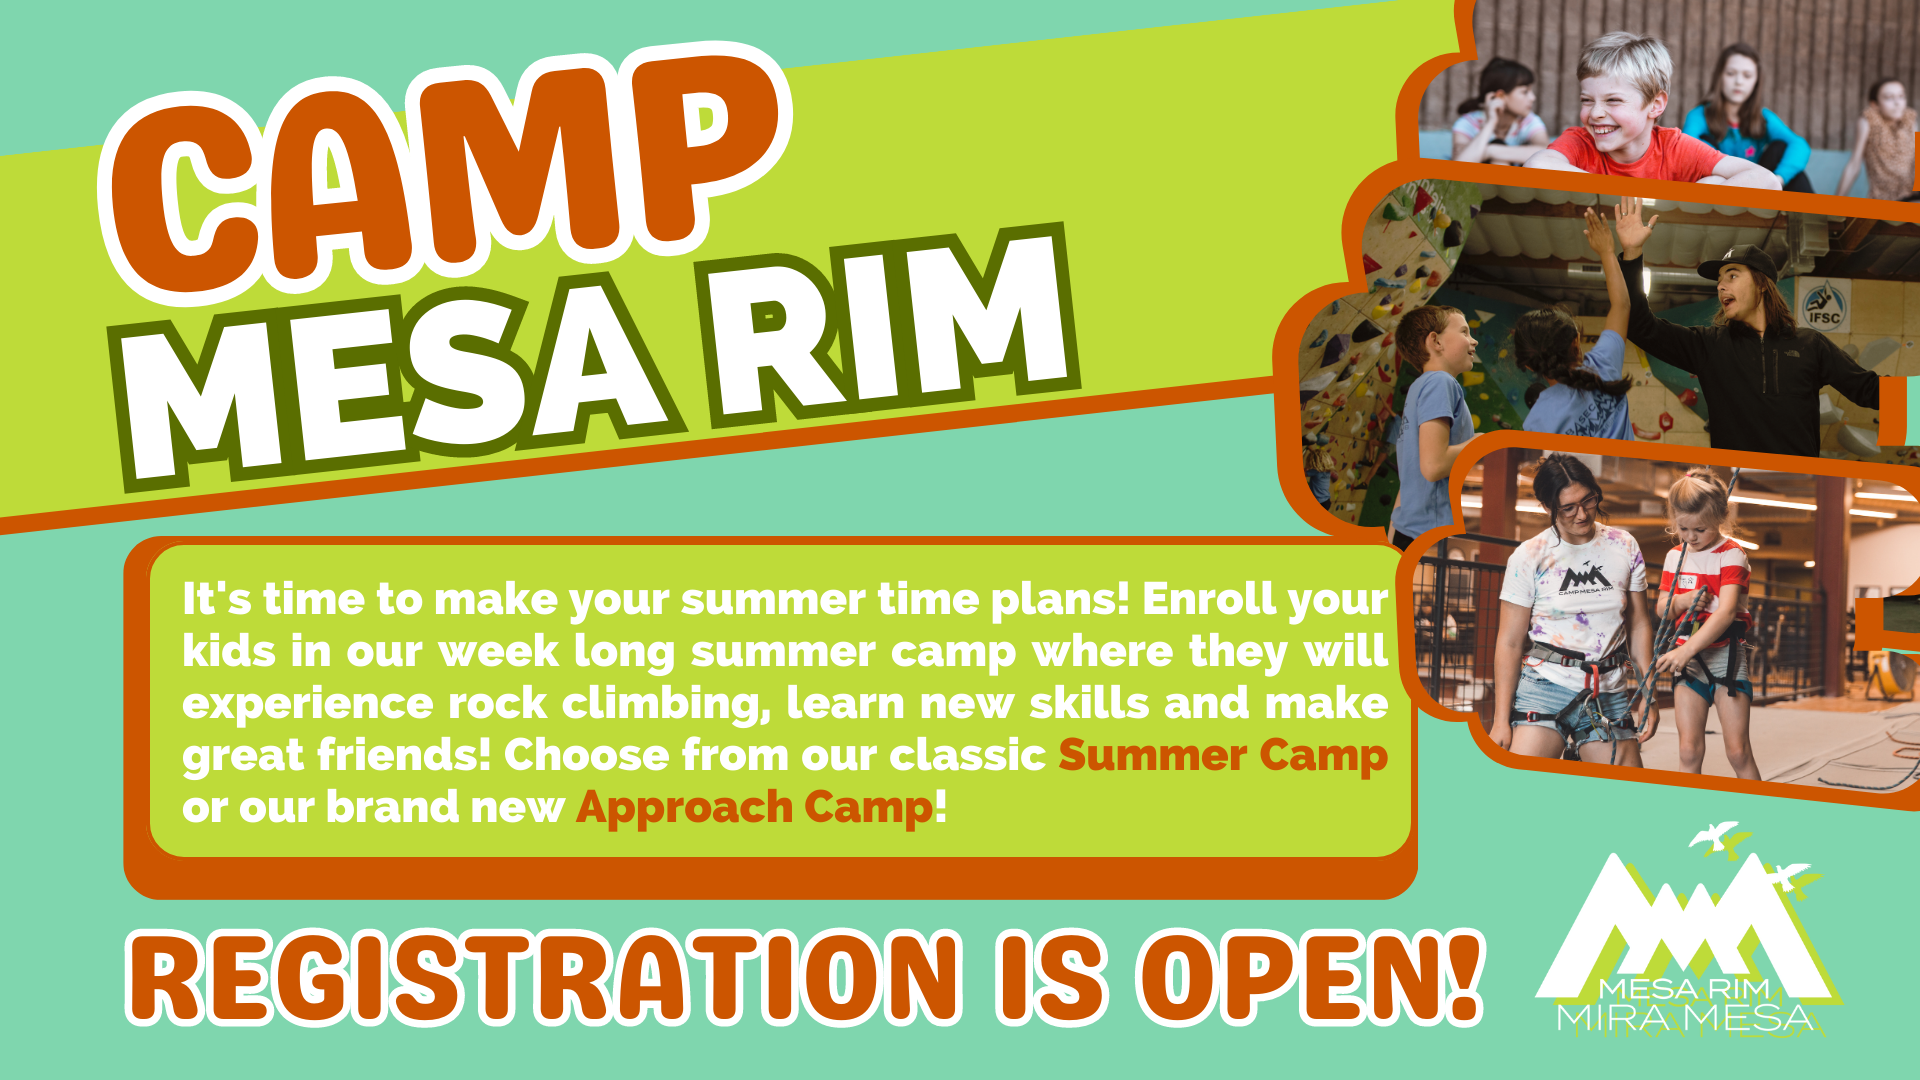 Camp Mesa Rim